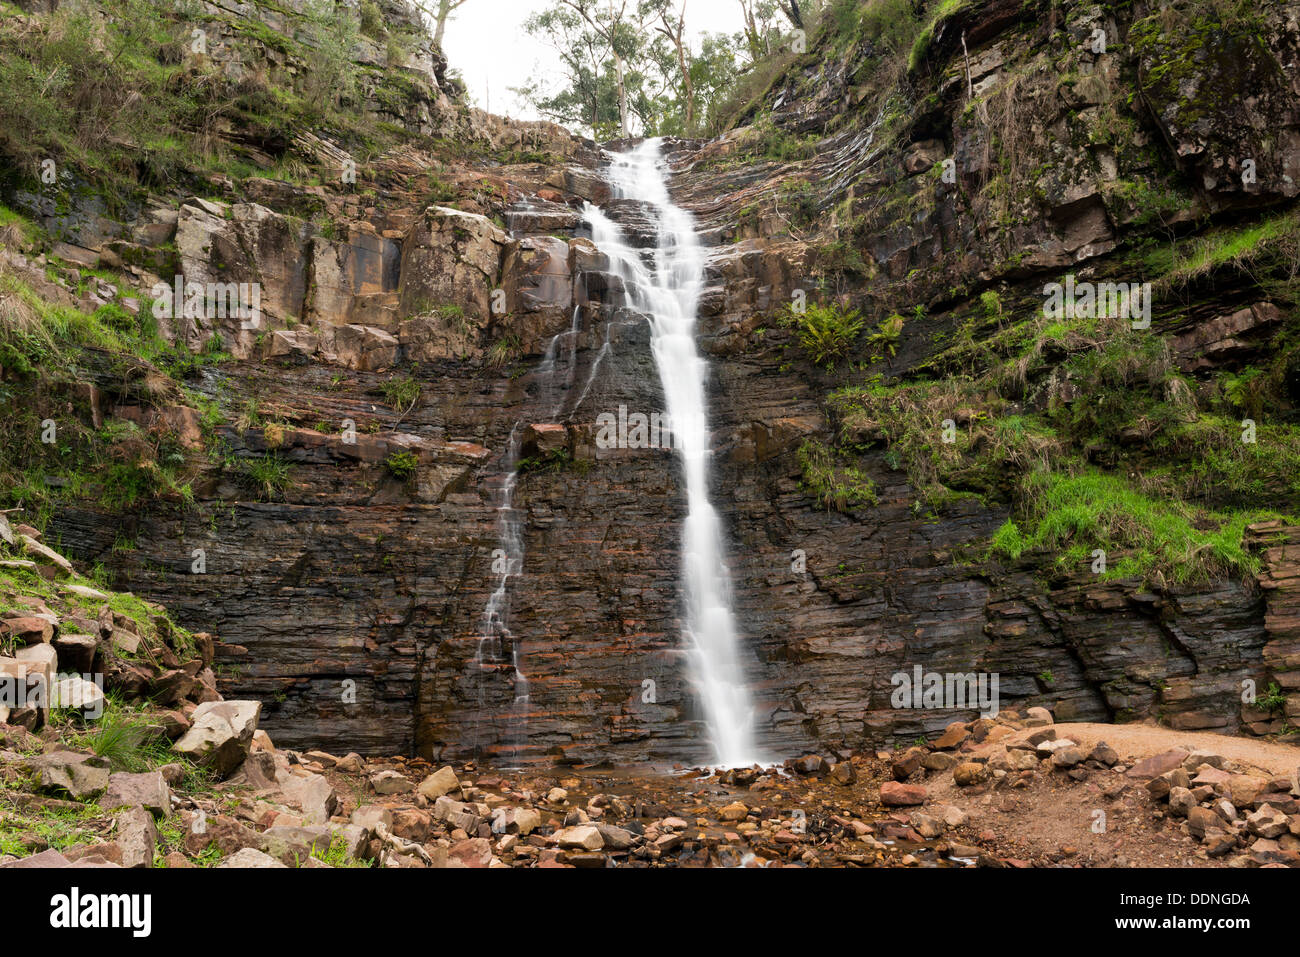 Silverband falls cascade dans la région de l'Australie dans les Grampians Banque D'Images